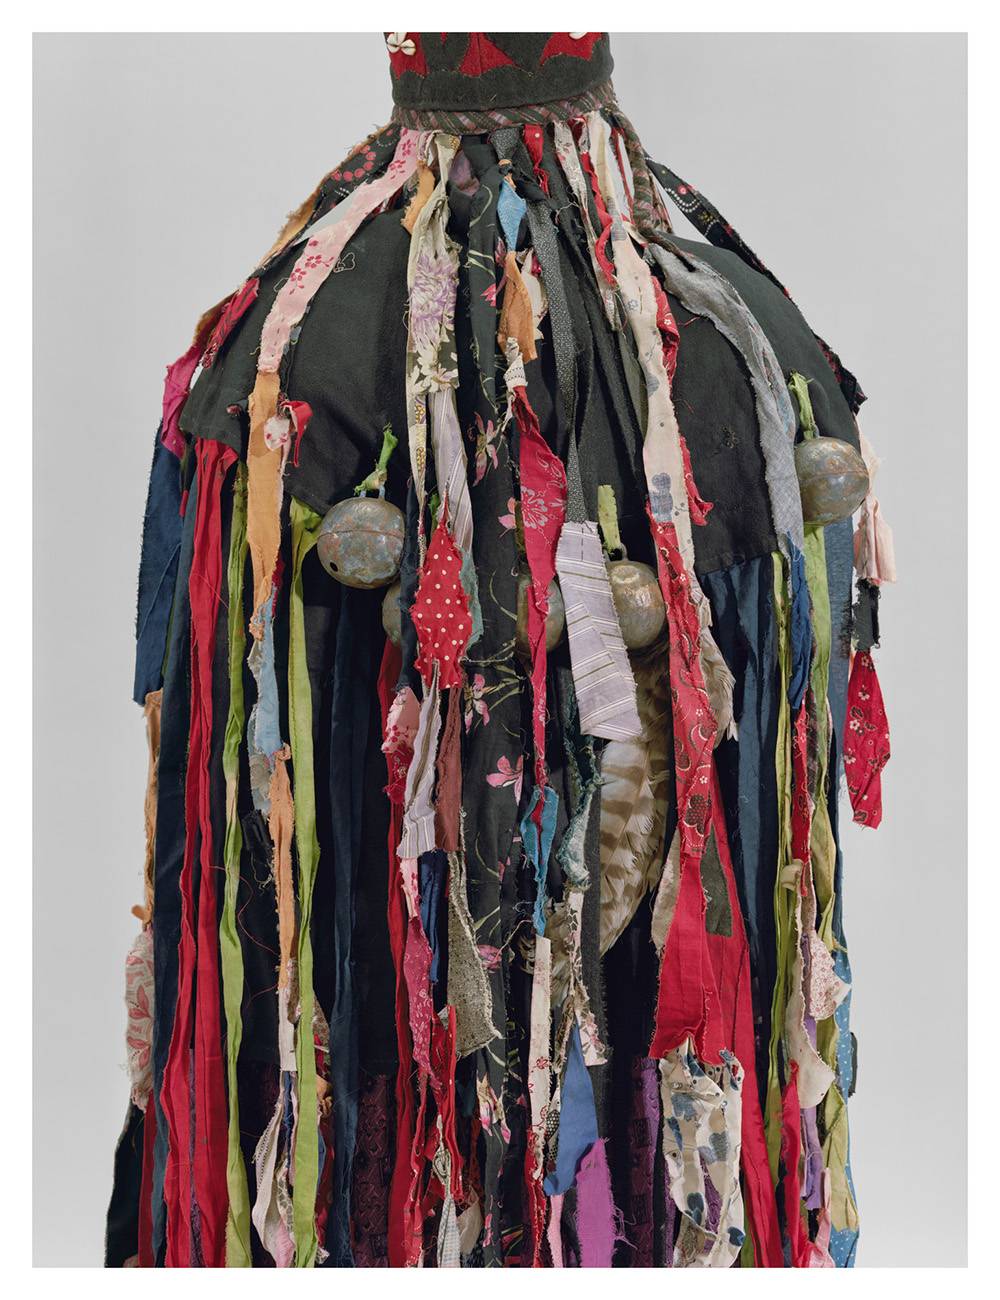 Bownik, Rewers (strój szamanki, przełom XIX i XX wieku, Syberia, gubernia jenisejska), Rosyjskie Muzeum Etnograficzne w Petersburgu, 2017,